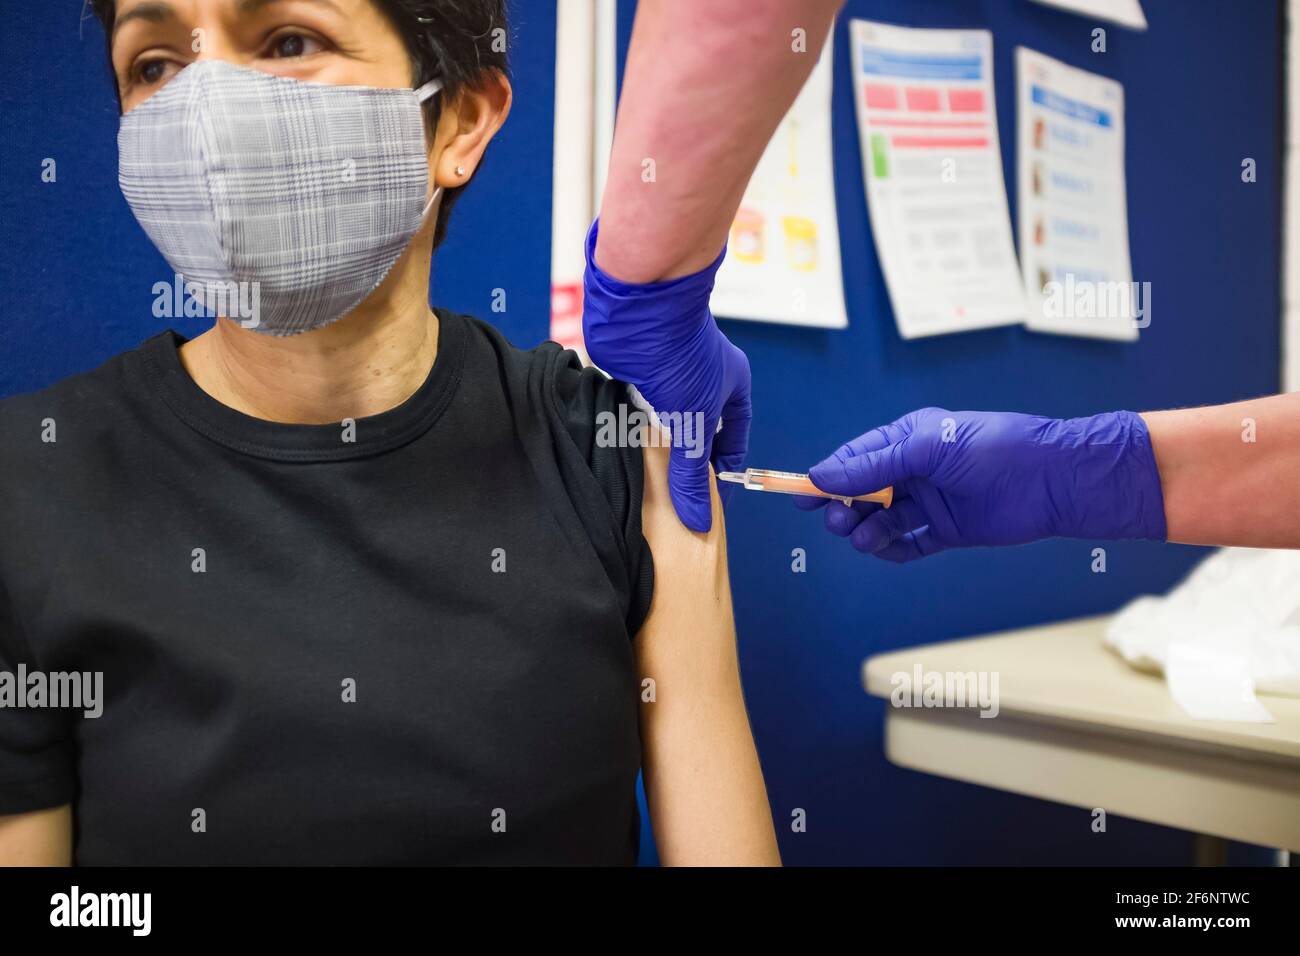 Femme asiatique britannique portant un masque facial, obtenant un vaccin Covid 19 dans un centre de vaccination en Angleterre, au Royaume-Uni Banque D'Images